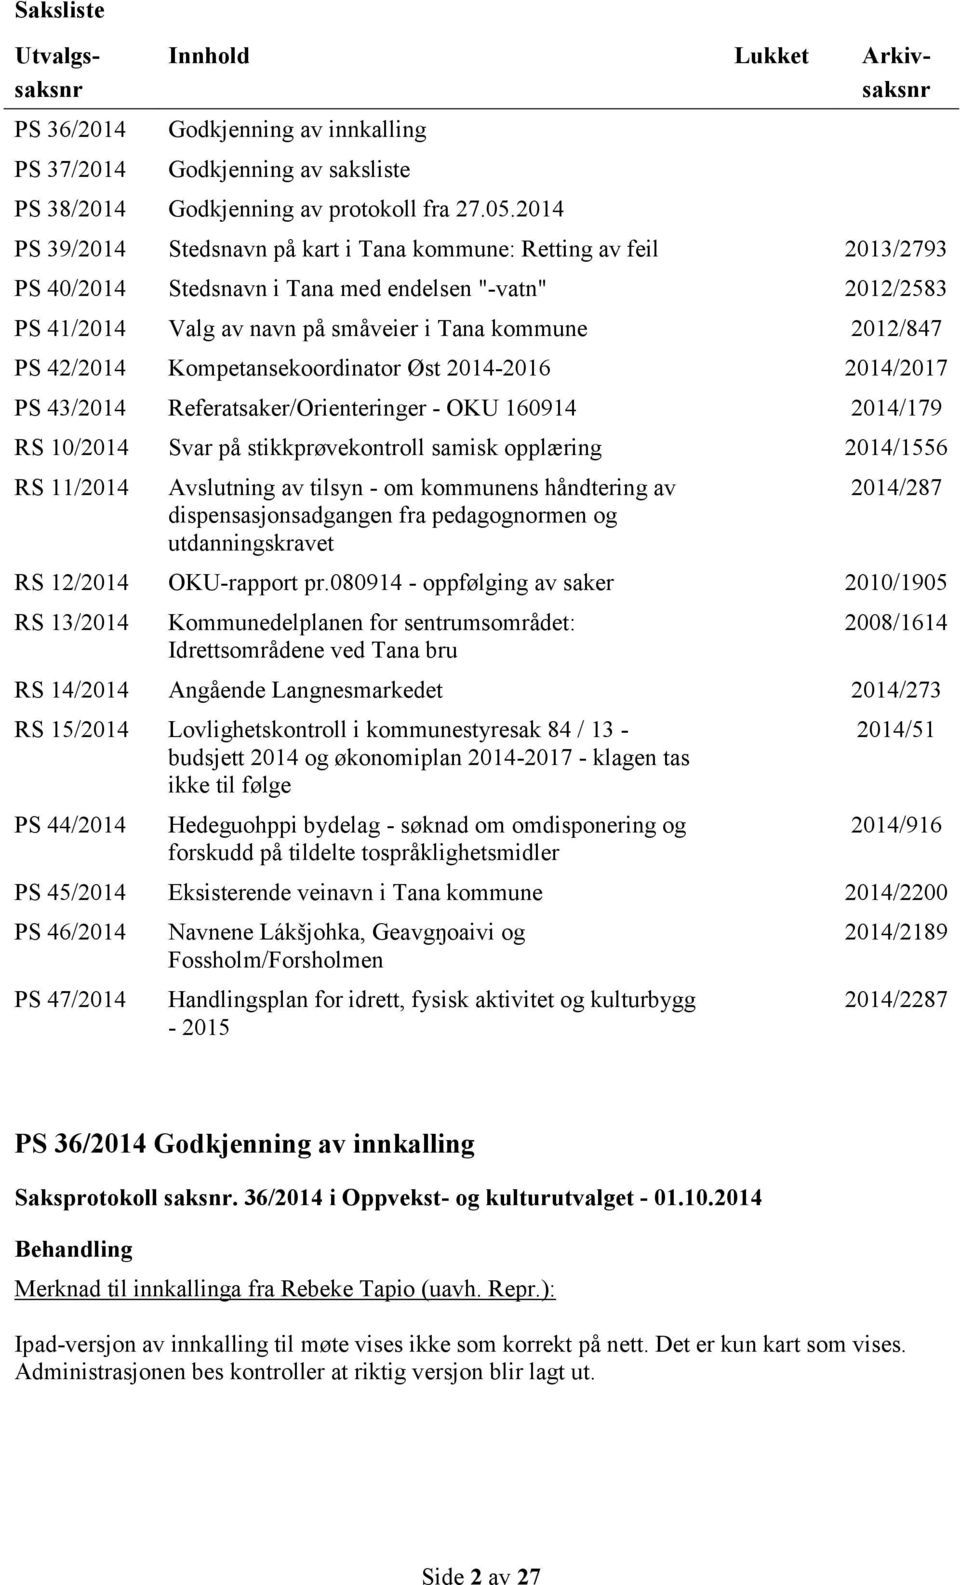 42/2014 Kompetansekoordinator Øst 2014-2016 2014/2017 PS 43/2014 Referatsaker/Orienteringer - OKU 160914 2014/179 RS 10/2014 Svar på stikkprøvekontroll samisk opplæring 2014/1556 RS 11/2014